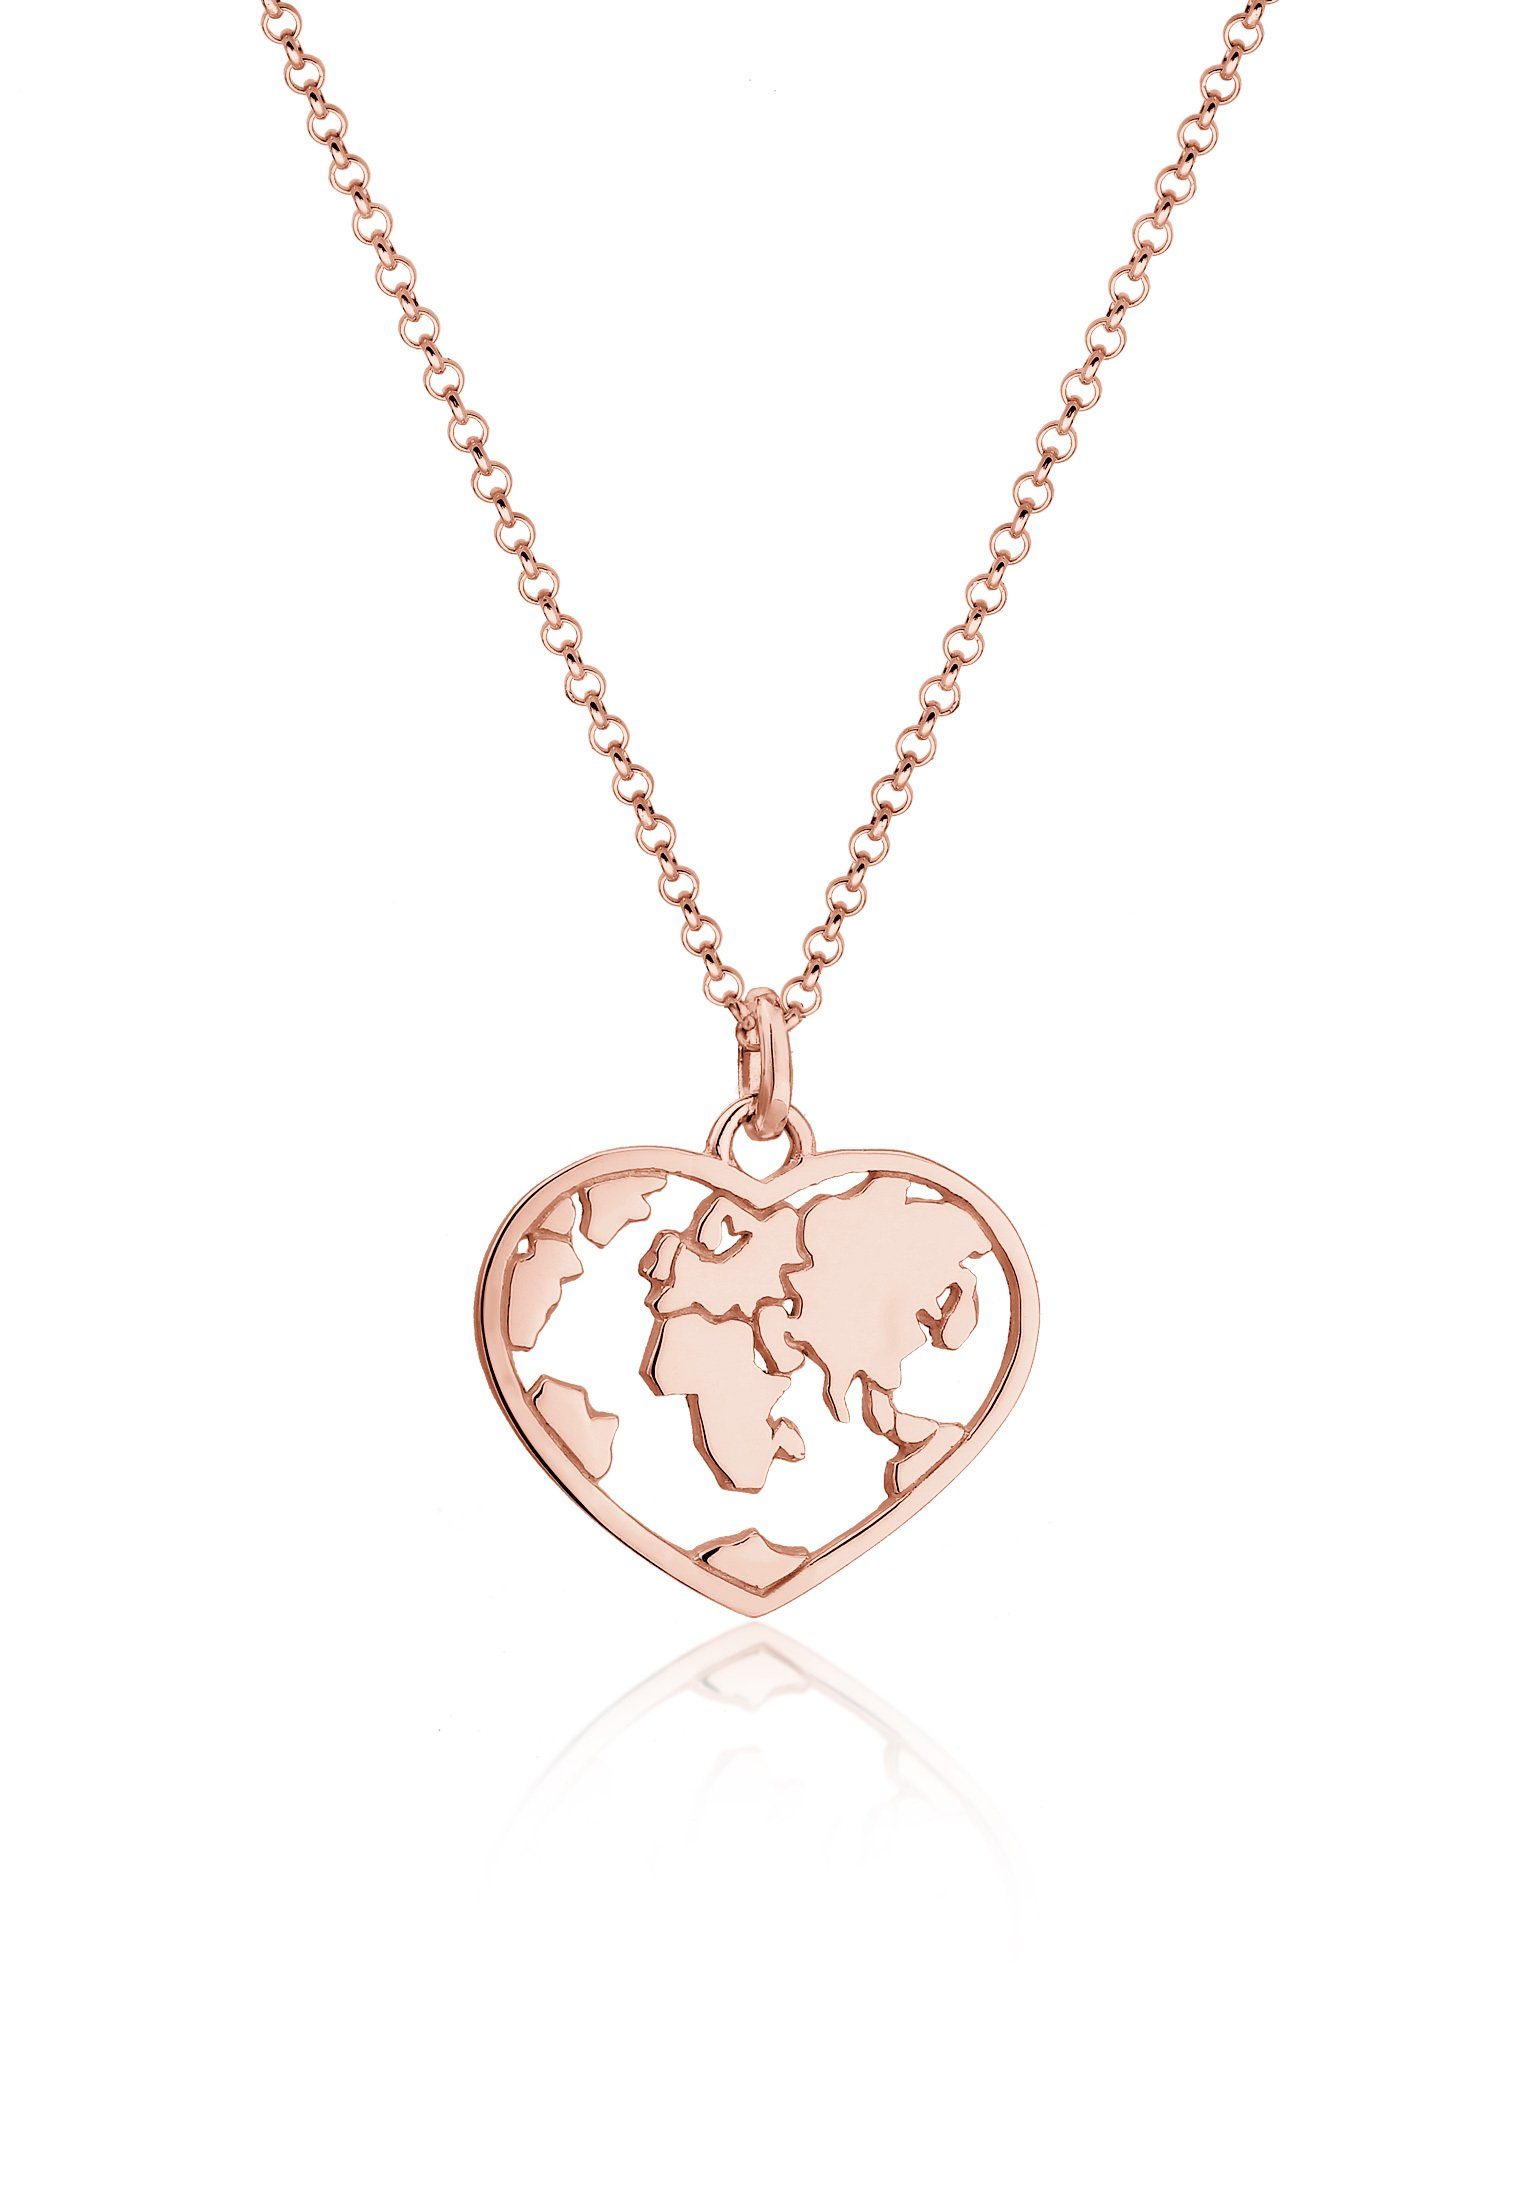 Weltkugel Globus Anhänger Trend Silber Elli Erbskette mit 925 Rosegold Herz Kette